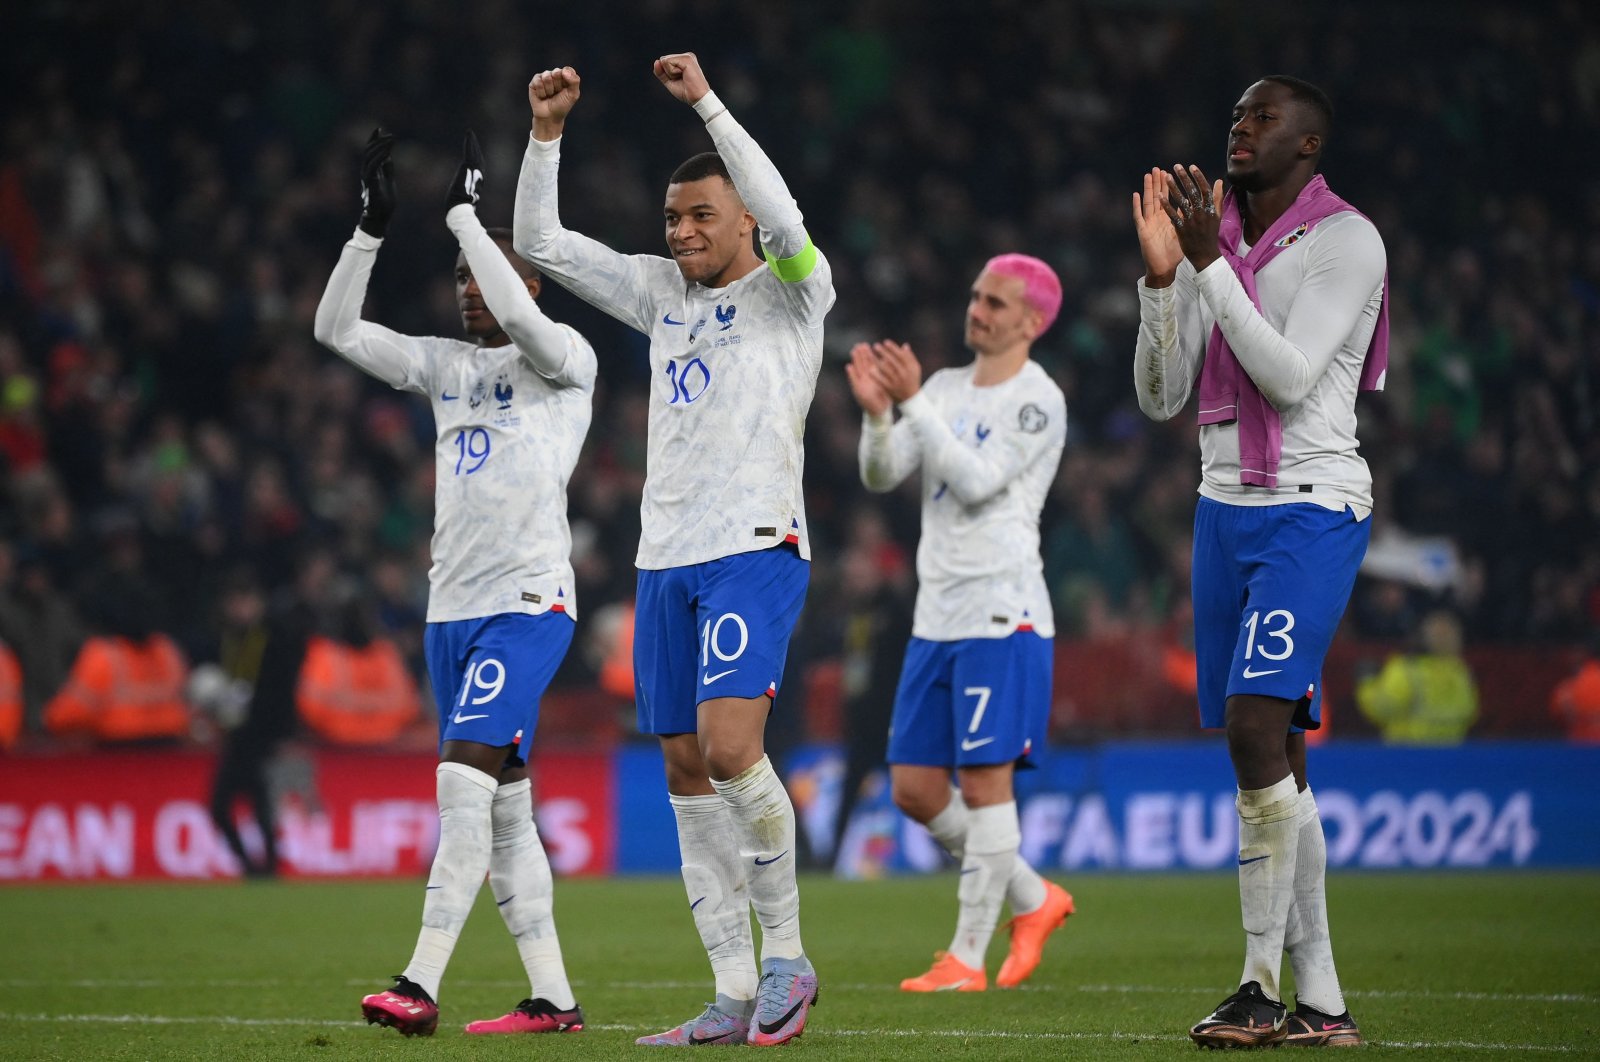 Wasit Prancis memerintahkan untuk tidak menjeda pertandingan bagi pemain Muslim